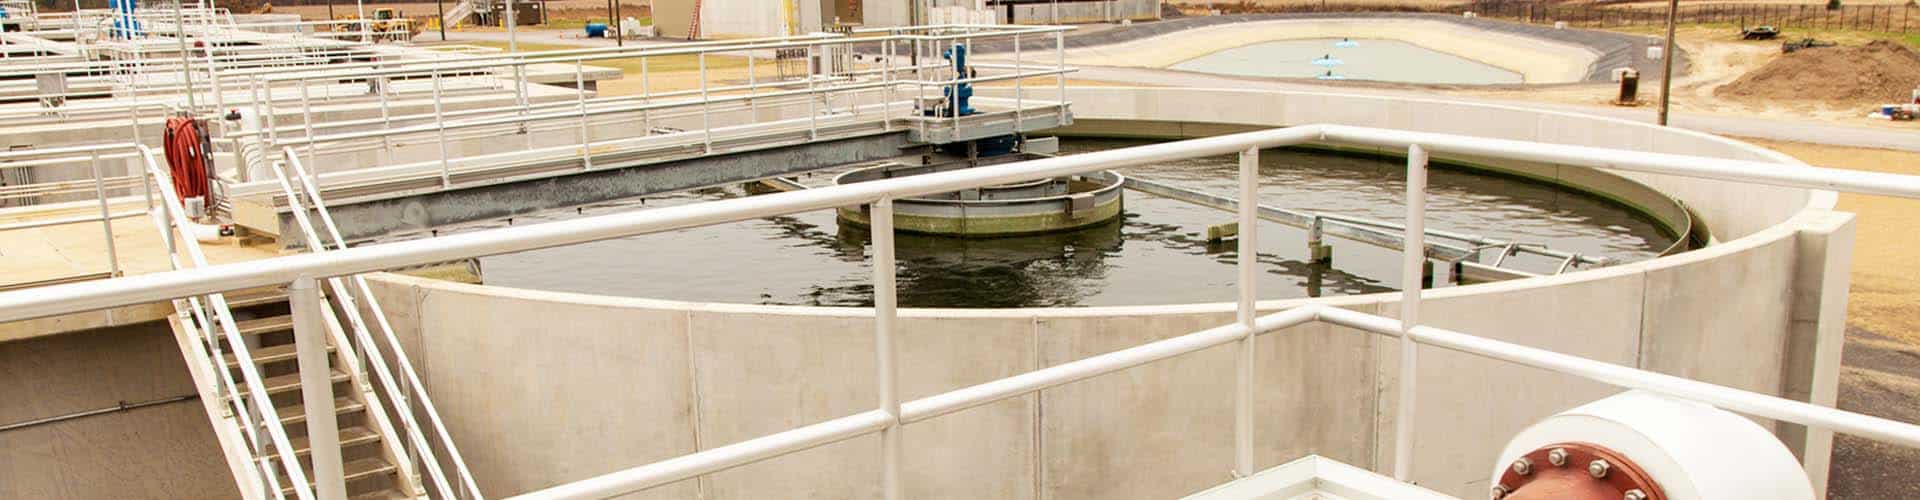 municipal wastewater treatment